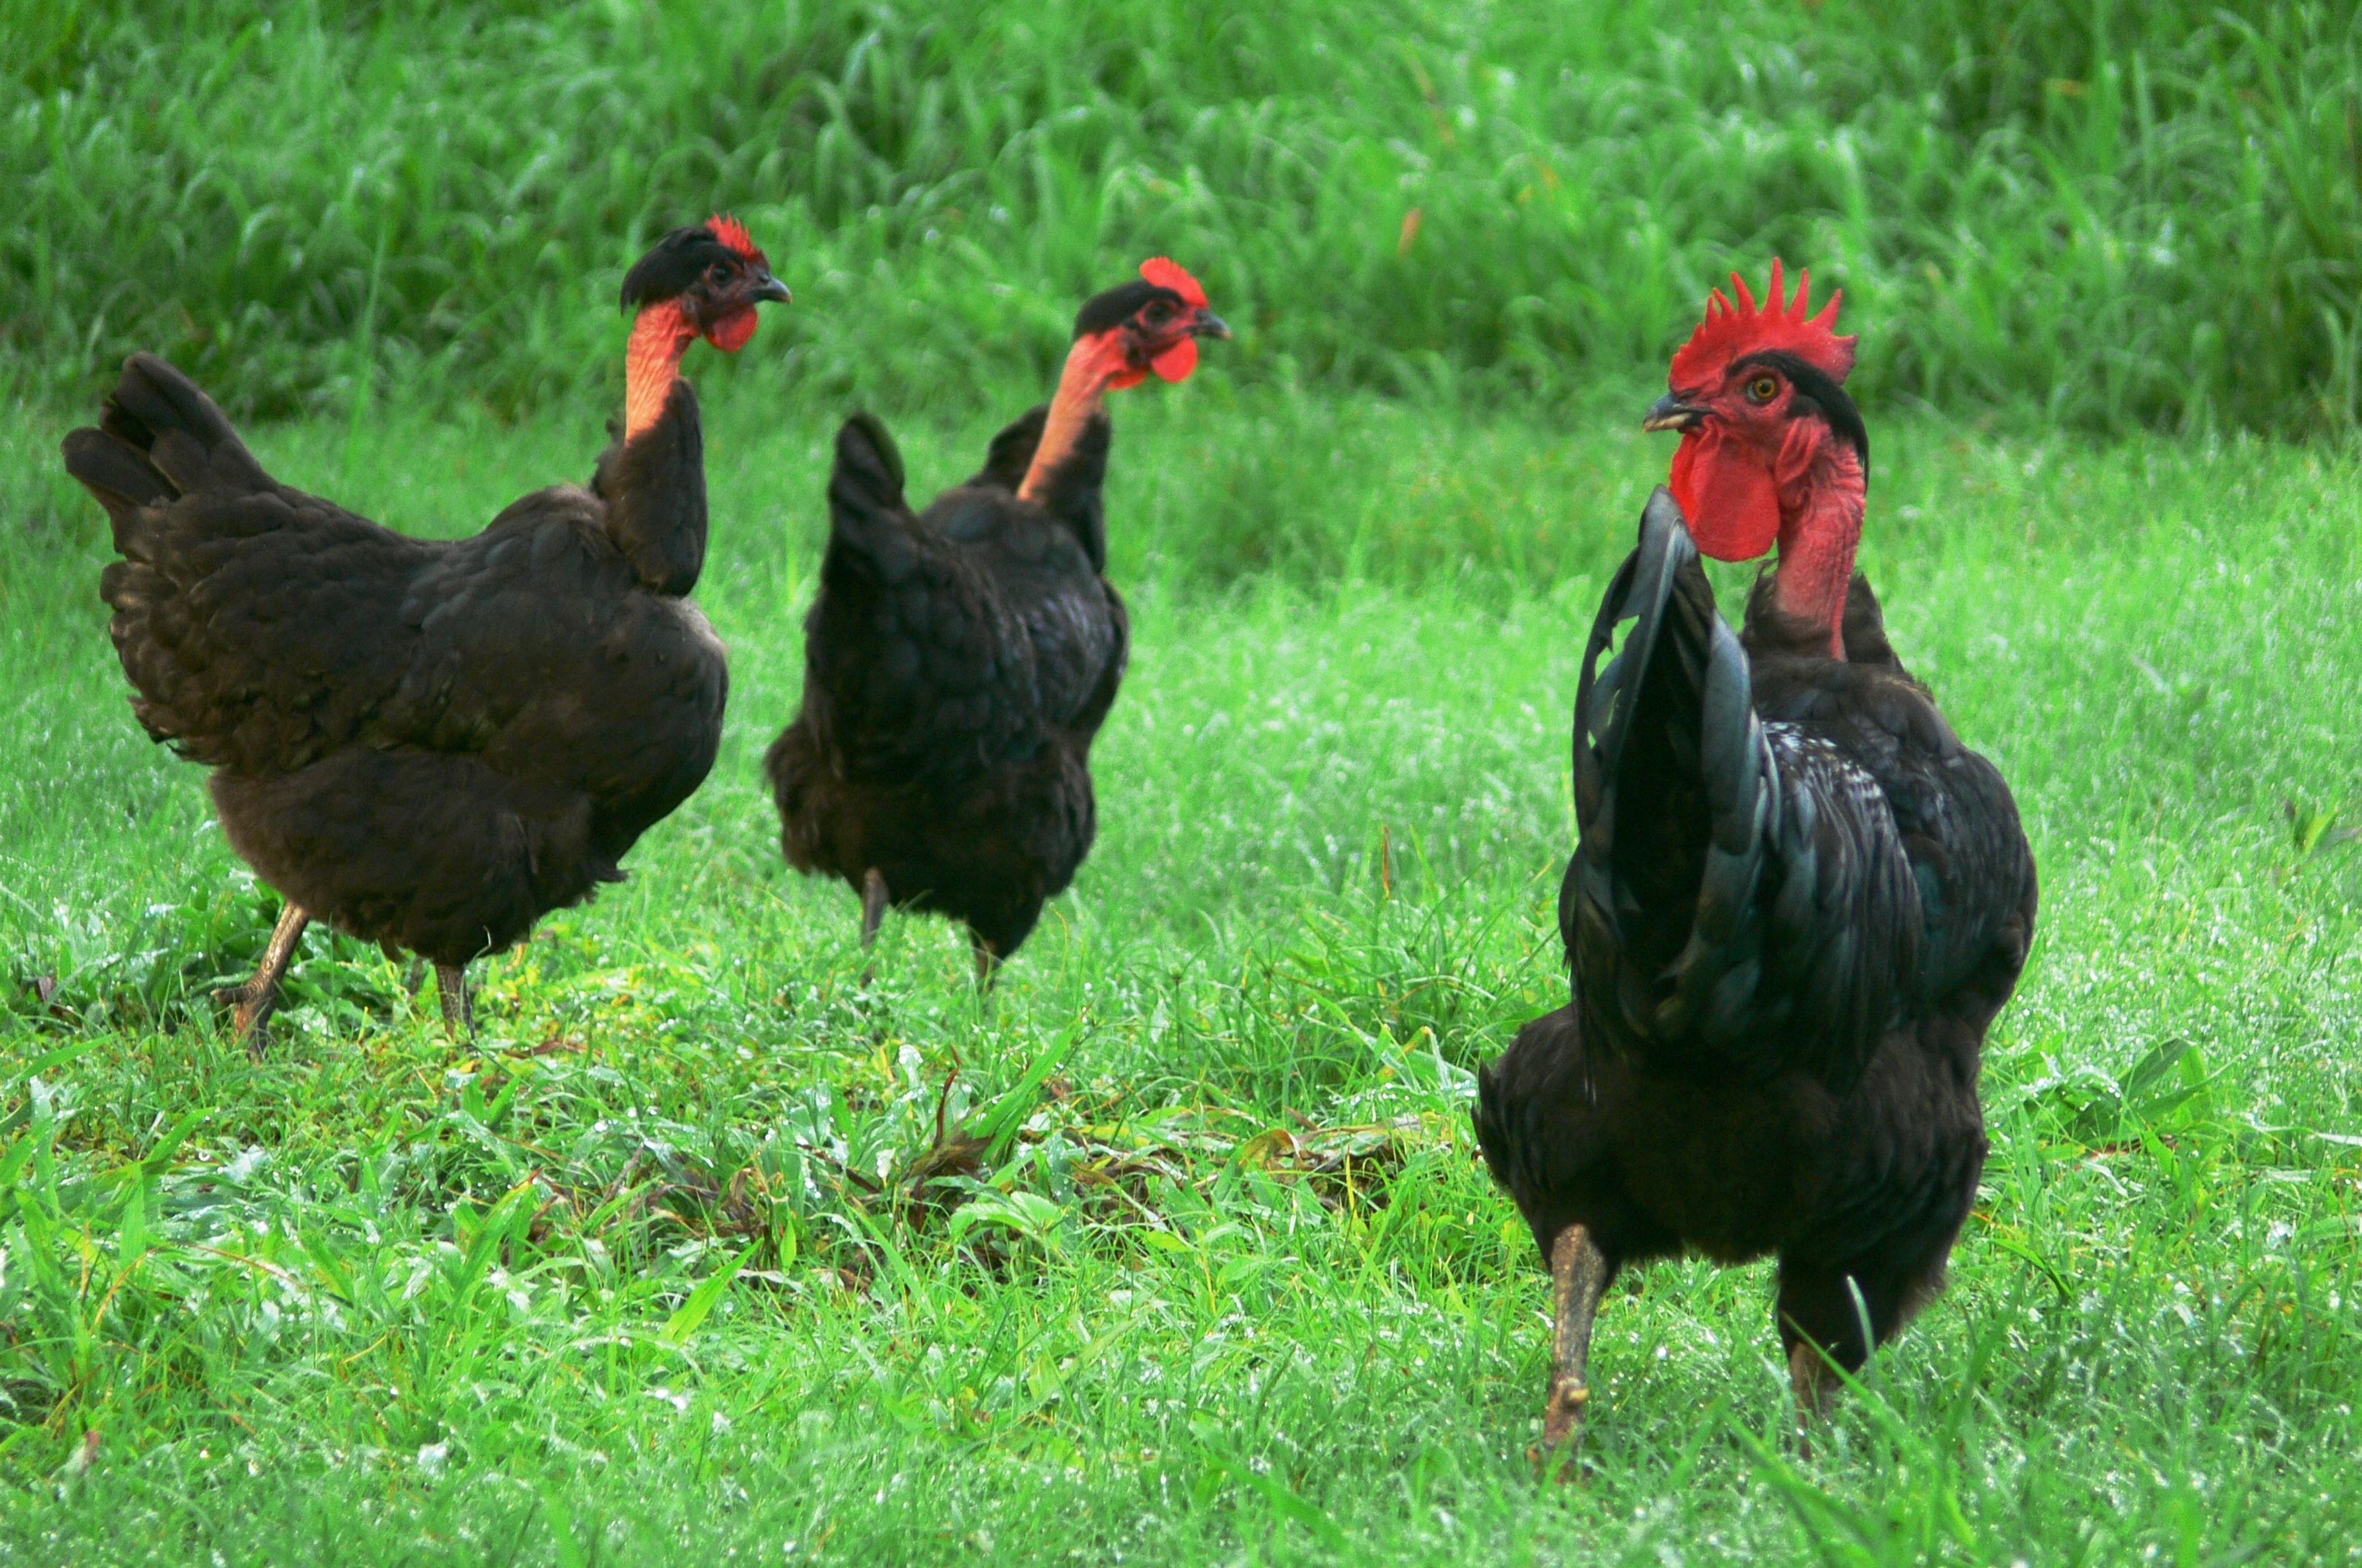 Gallina de cuello pelao 9 €: Nuestras gallinas y piensos de Avícola Antonia